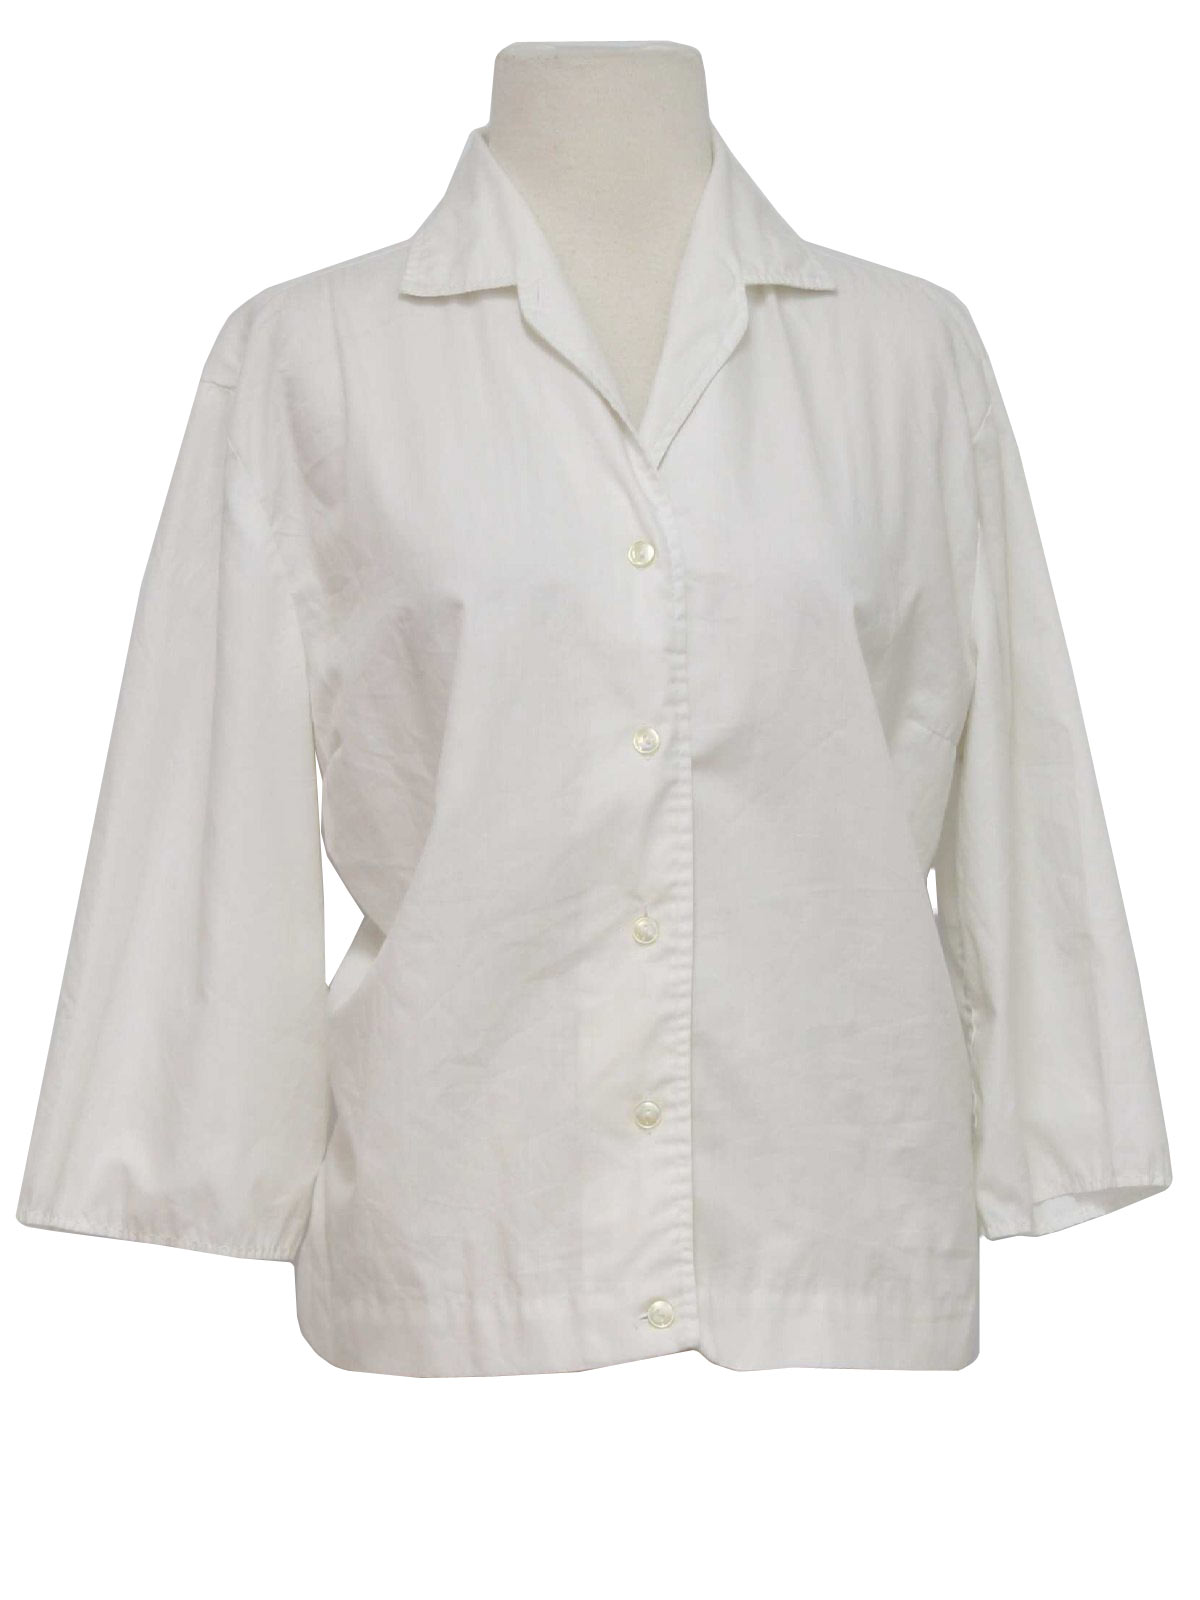 Retro 1950's Shirt (Worn Label) : 50s -Worn Label- Womens white cotton ...